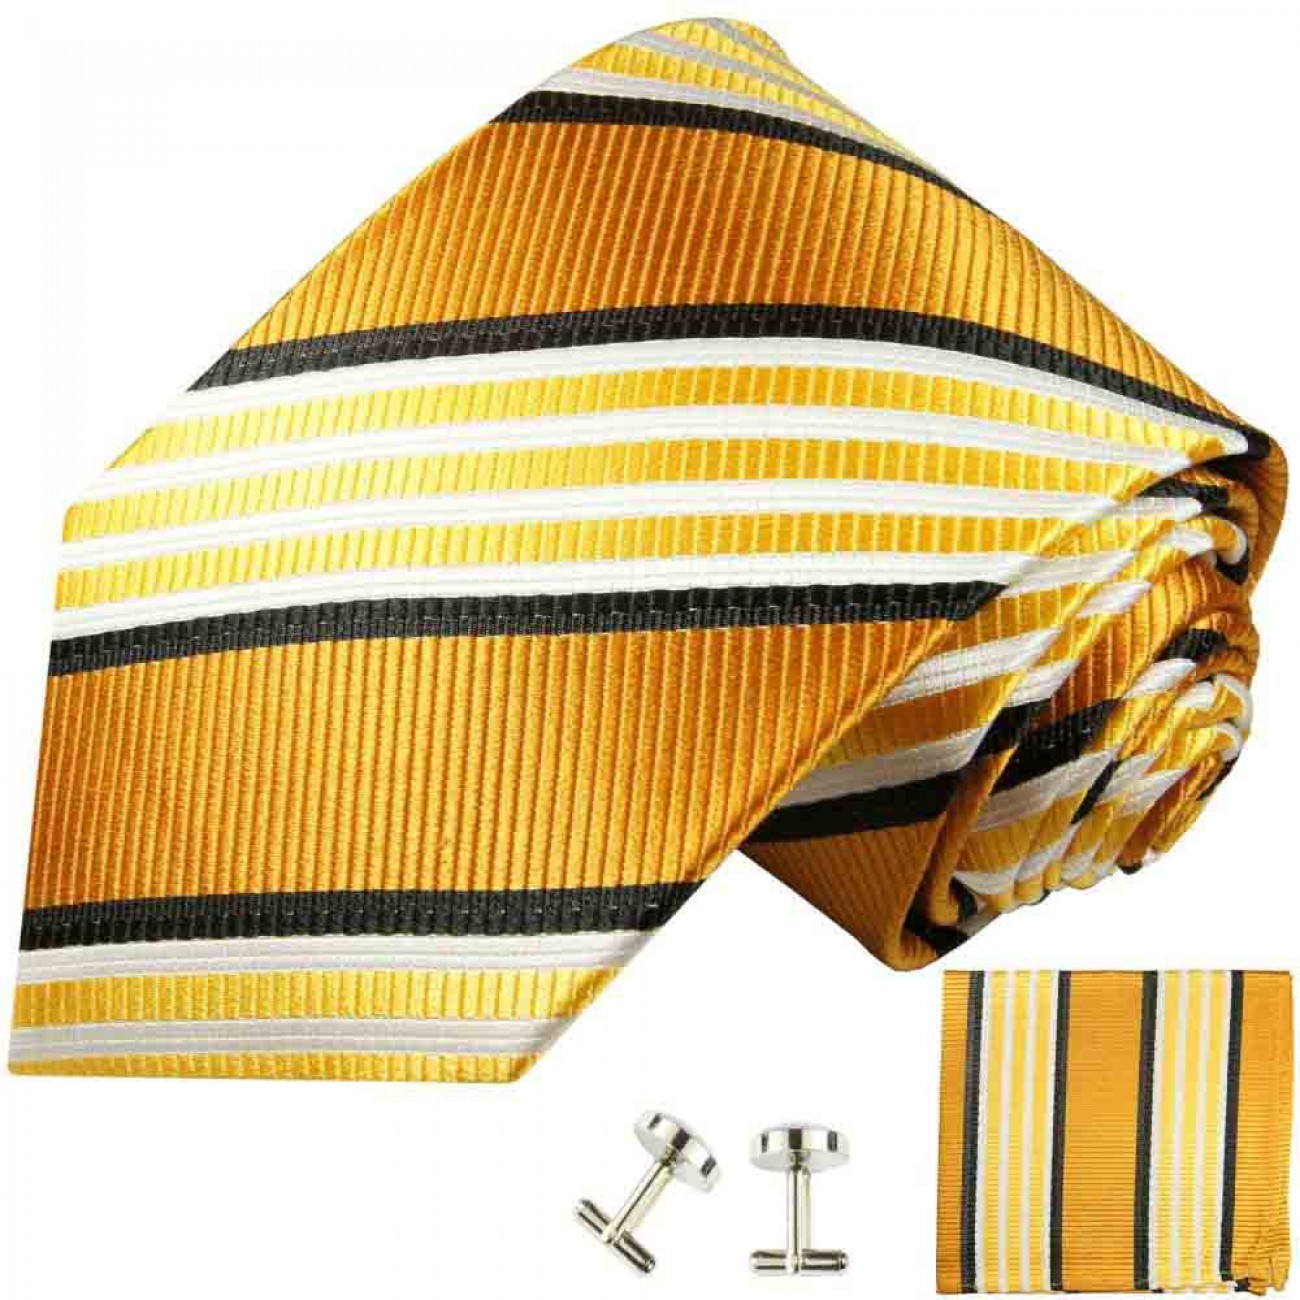 Krawatte gold gestreift Seidenkrawatte - Seide - Krawatte mit Einstecktuch und Manschettenknöpfe